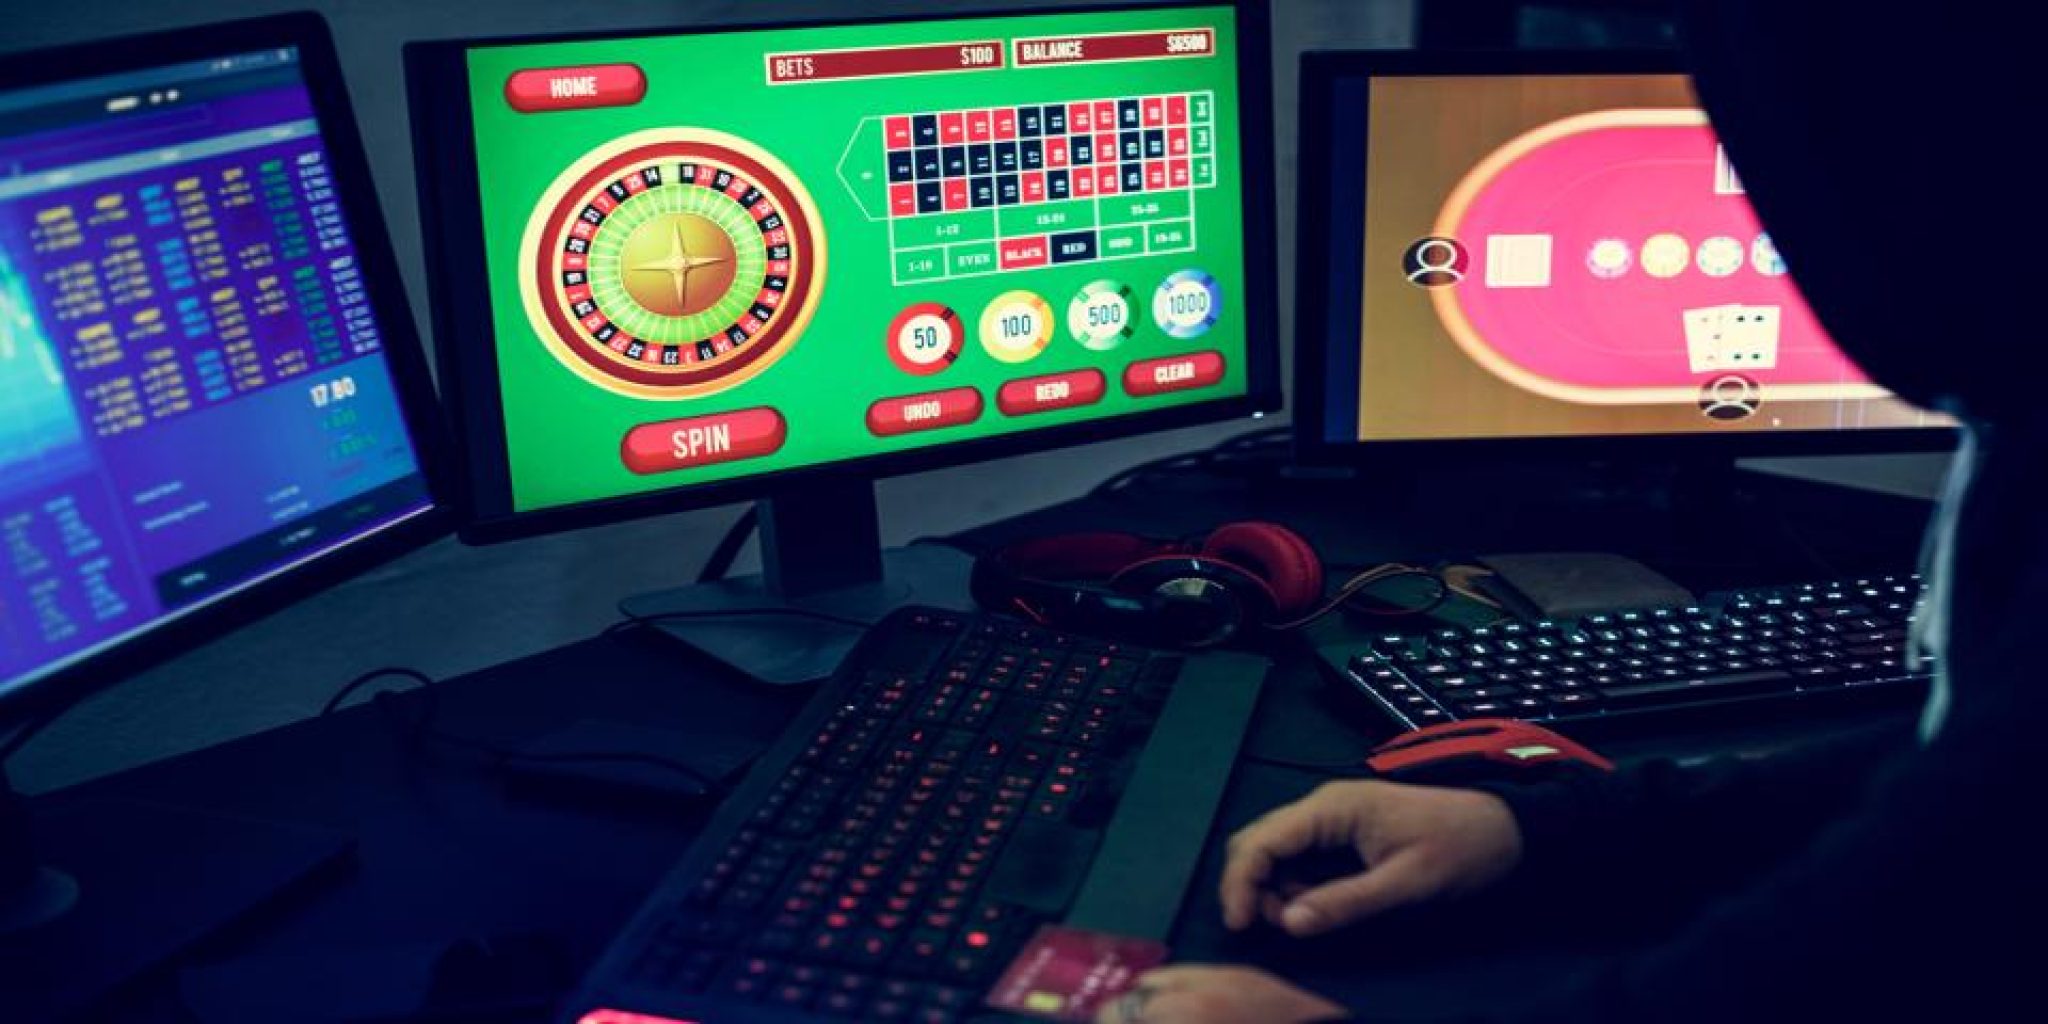 hollywood casino online ganling app